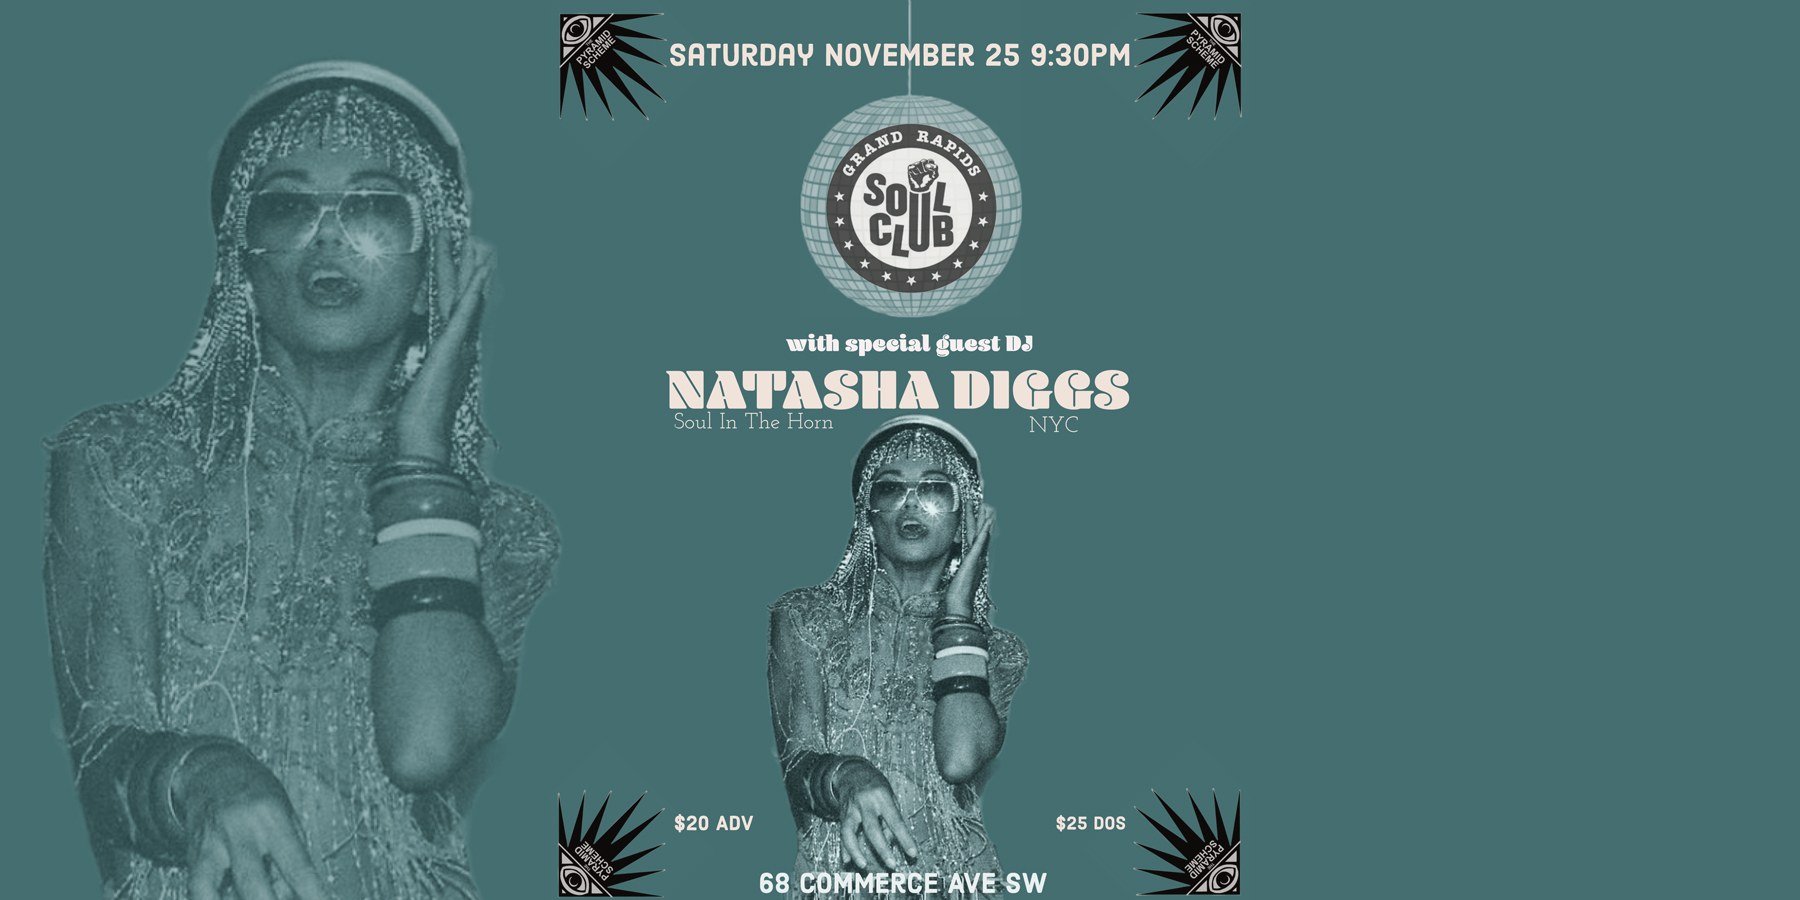 natasha diggs tour dates